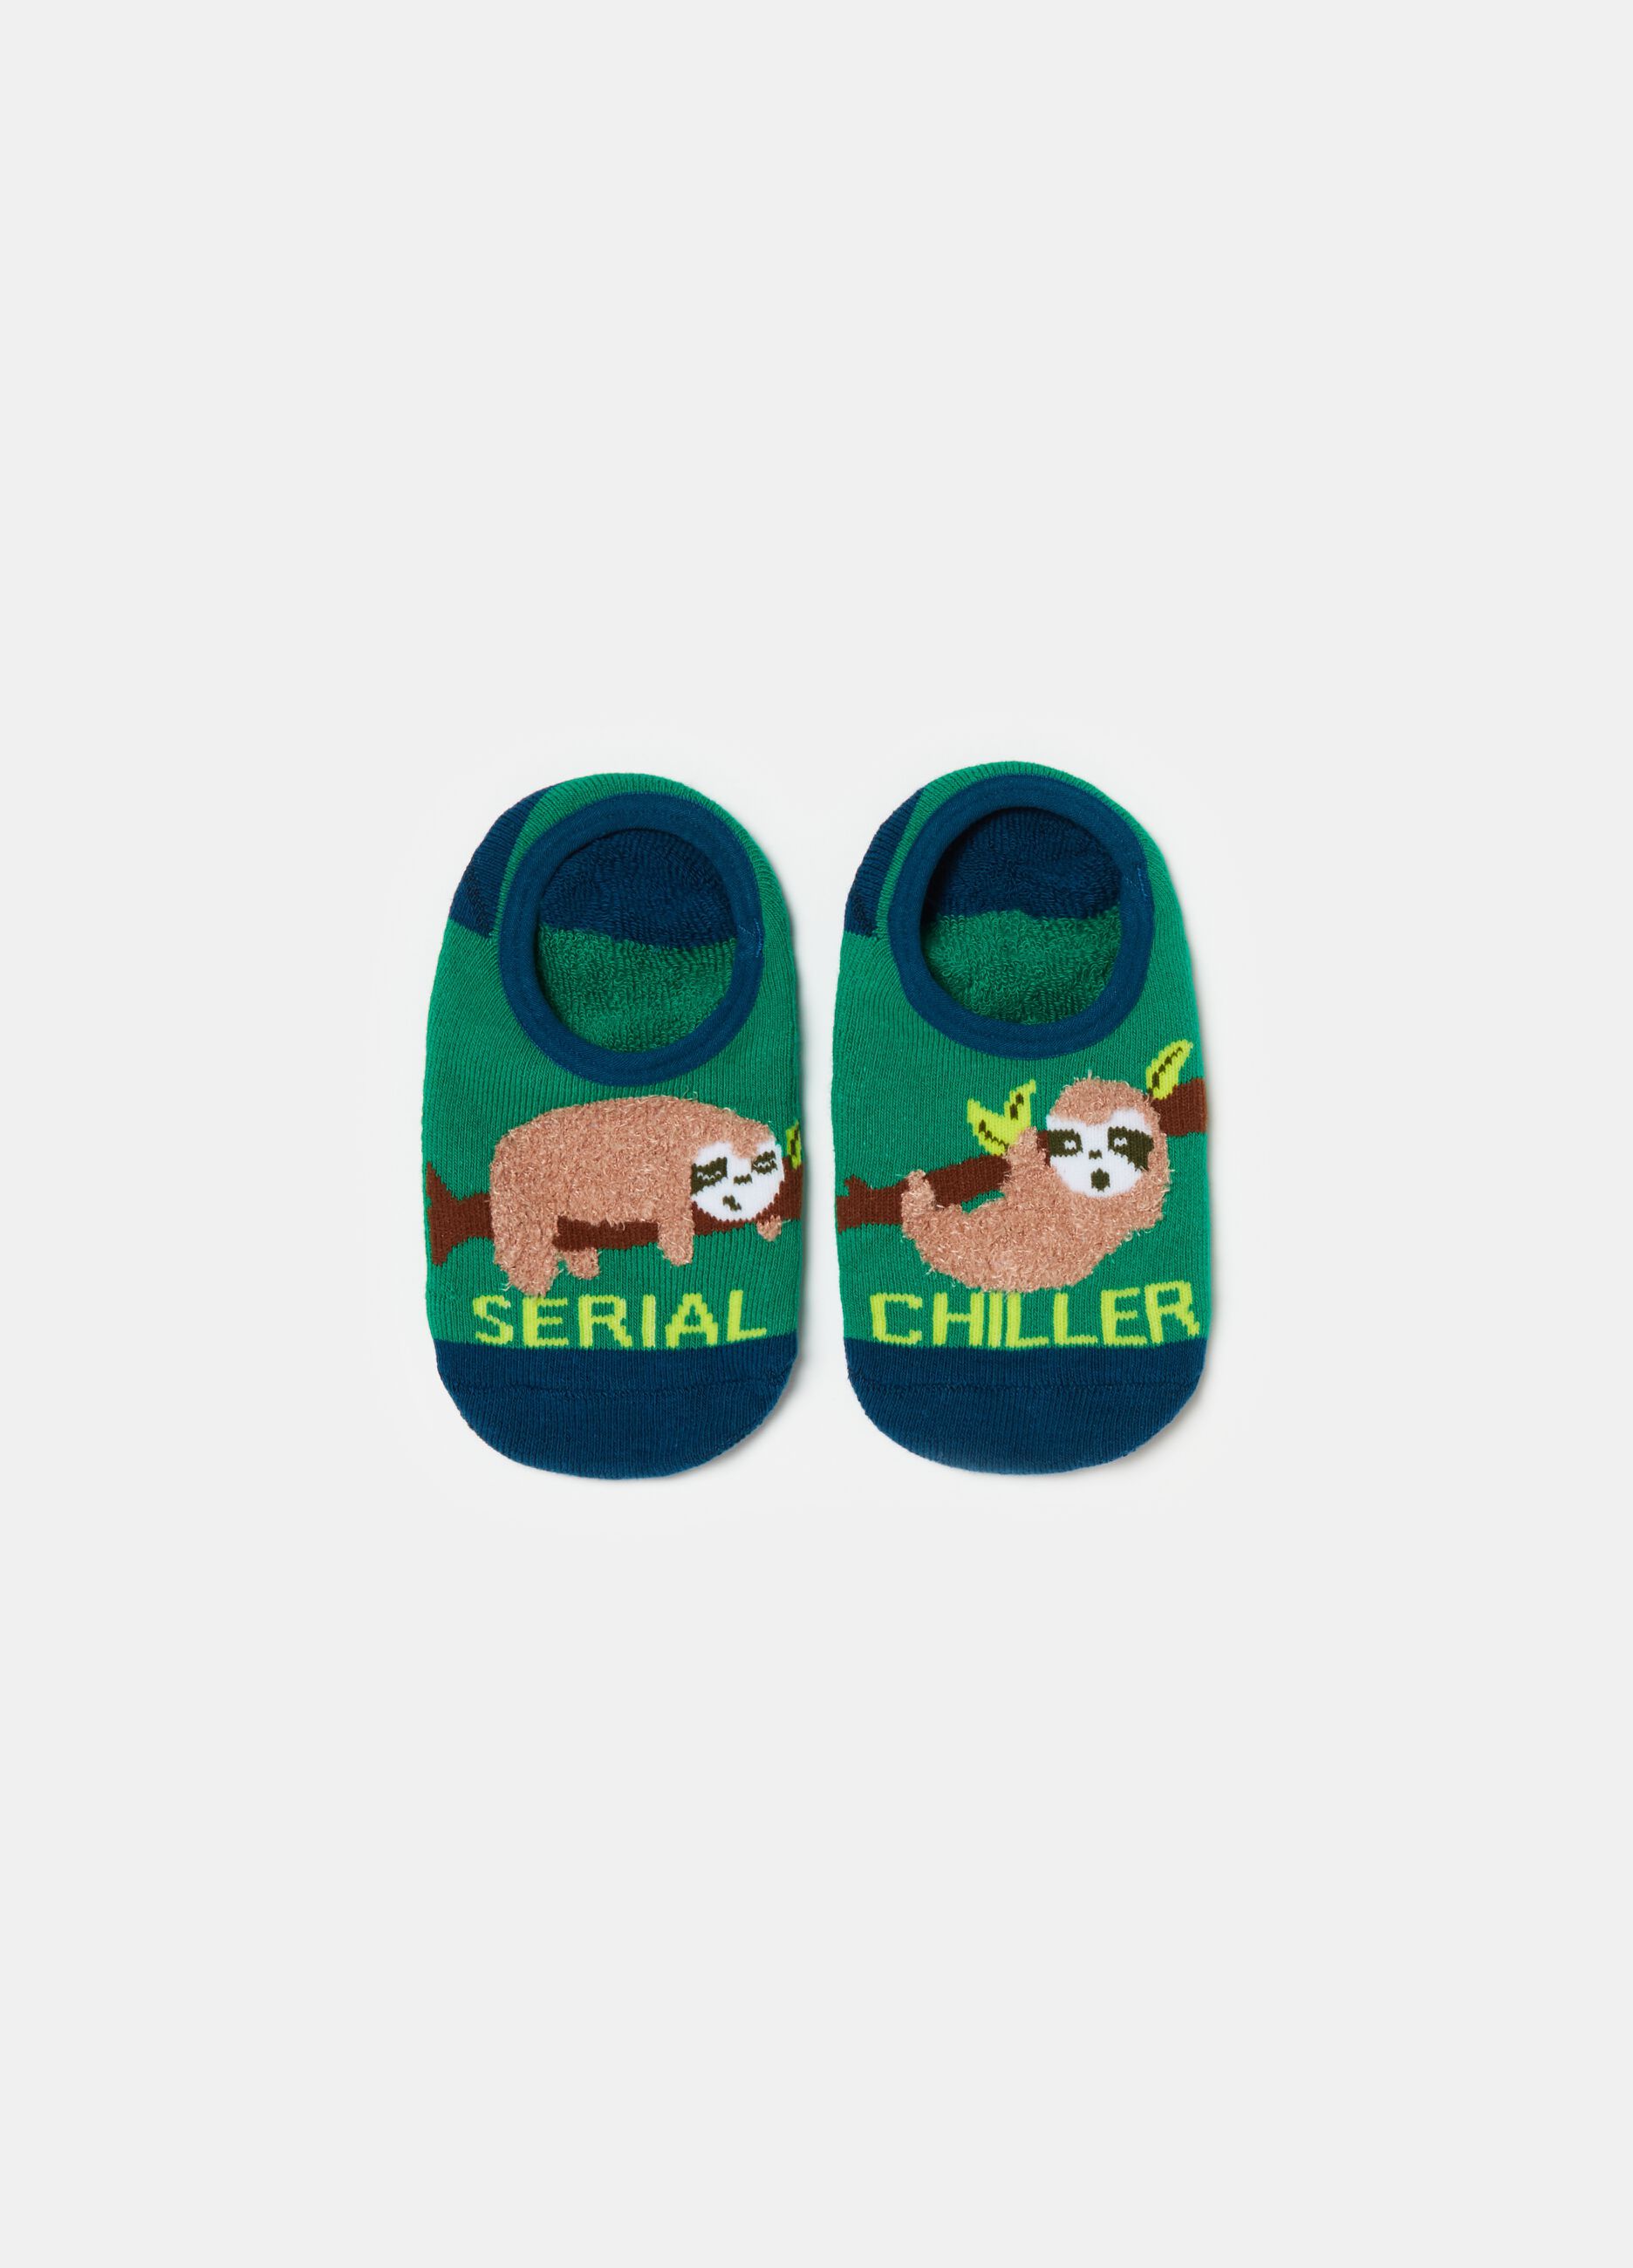 Slipper socks with sloth design